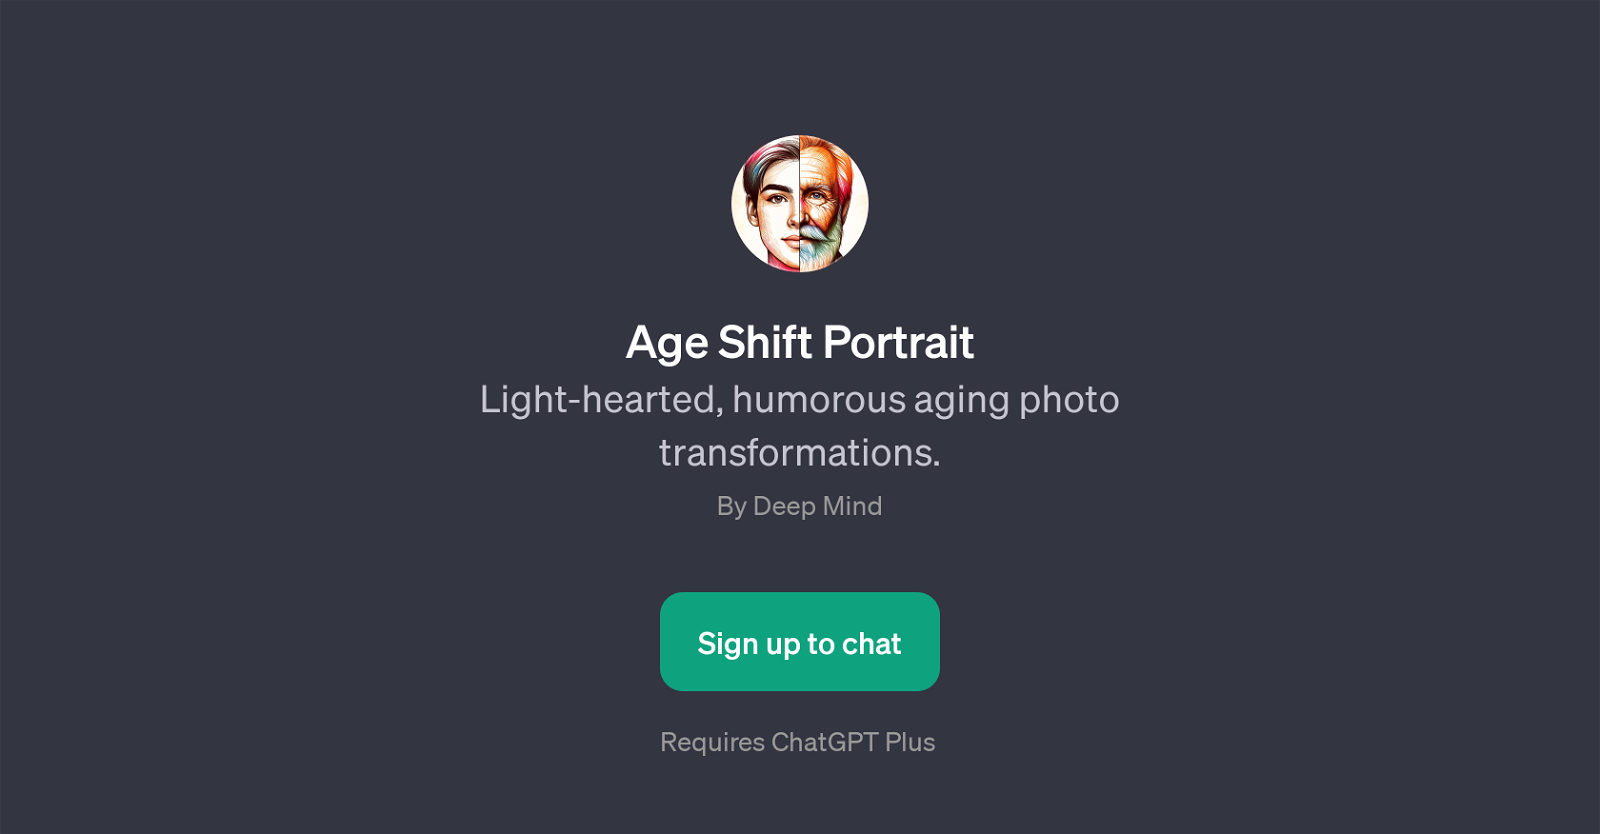 Age Shift Portrait website